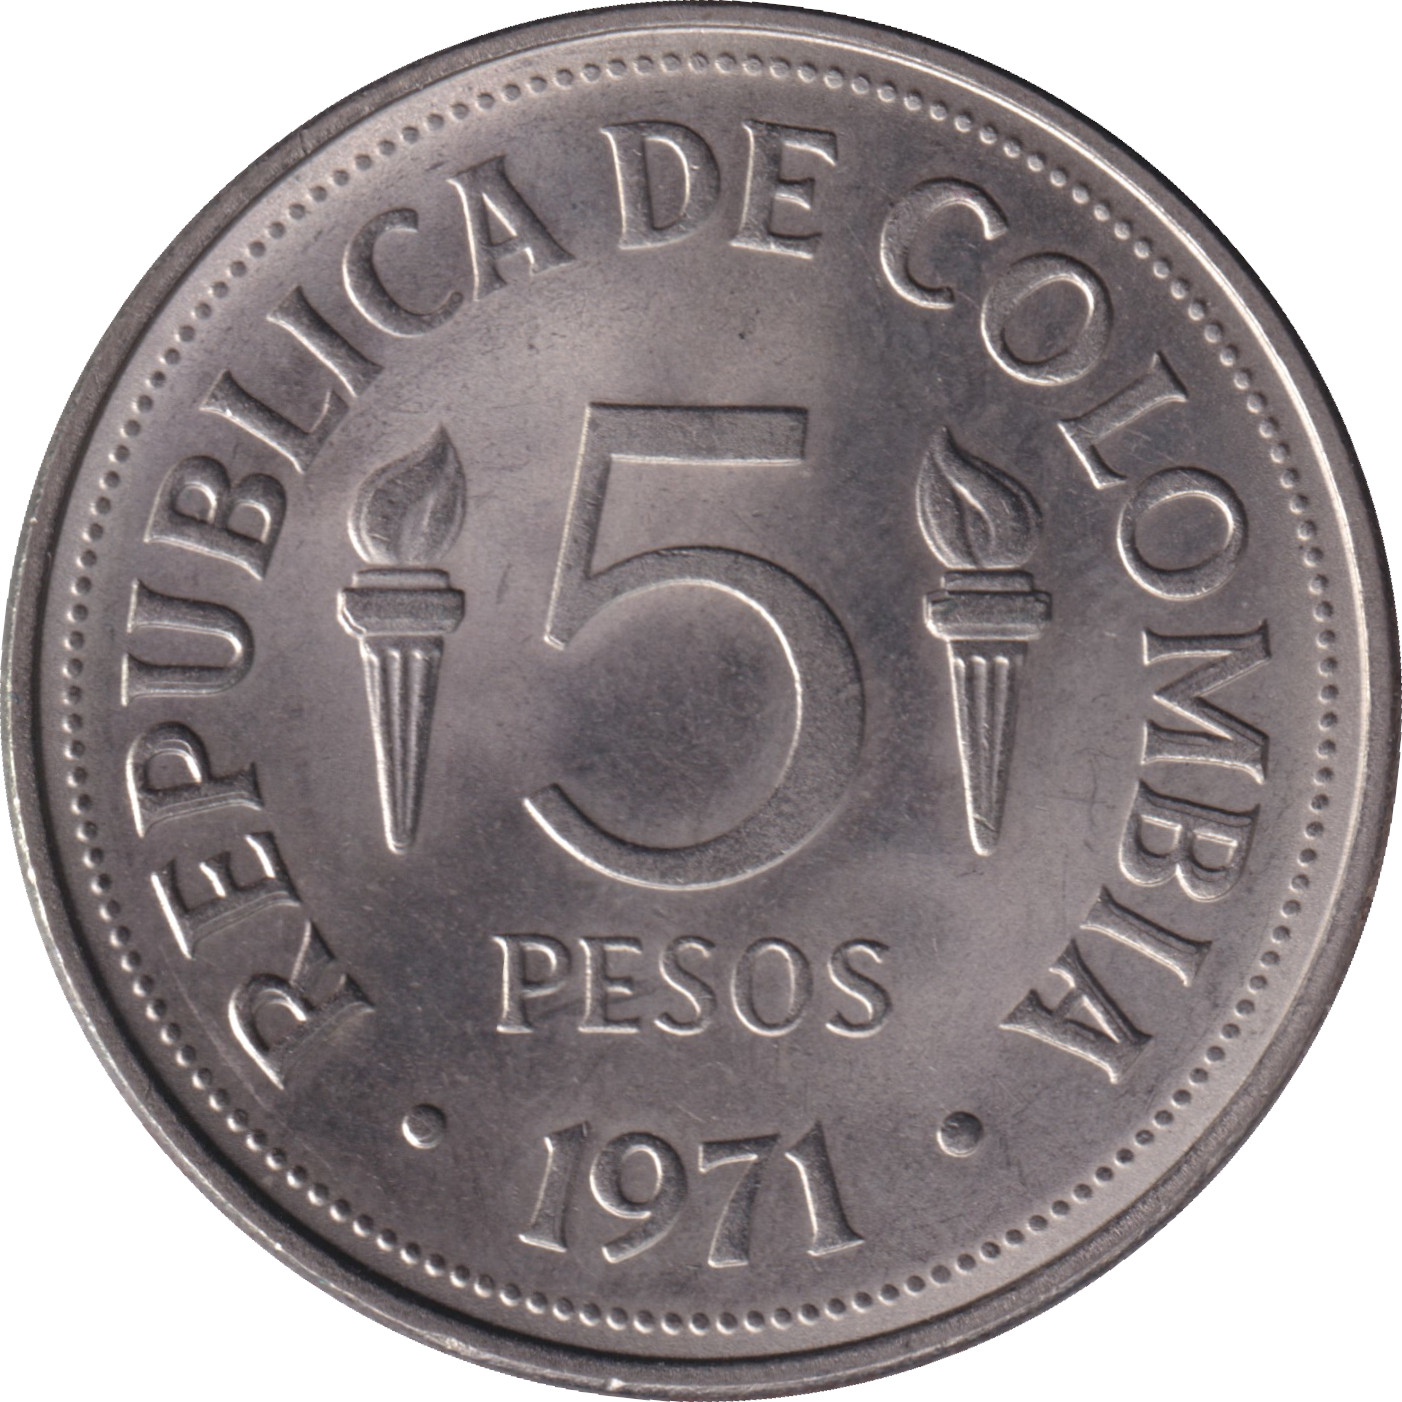 5 pesos - Jeux panaméricains